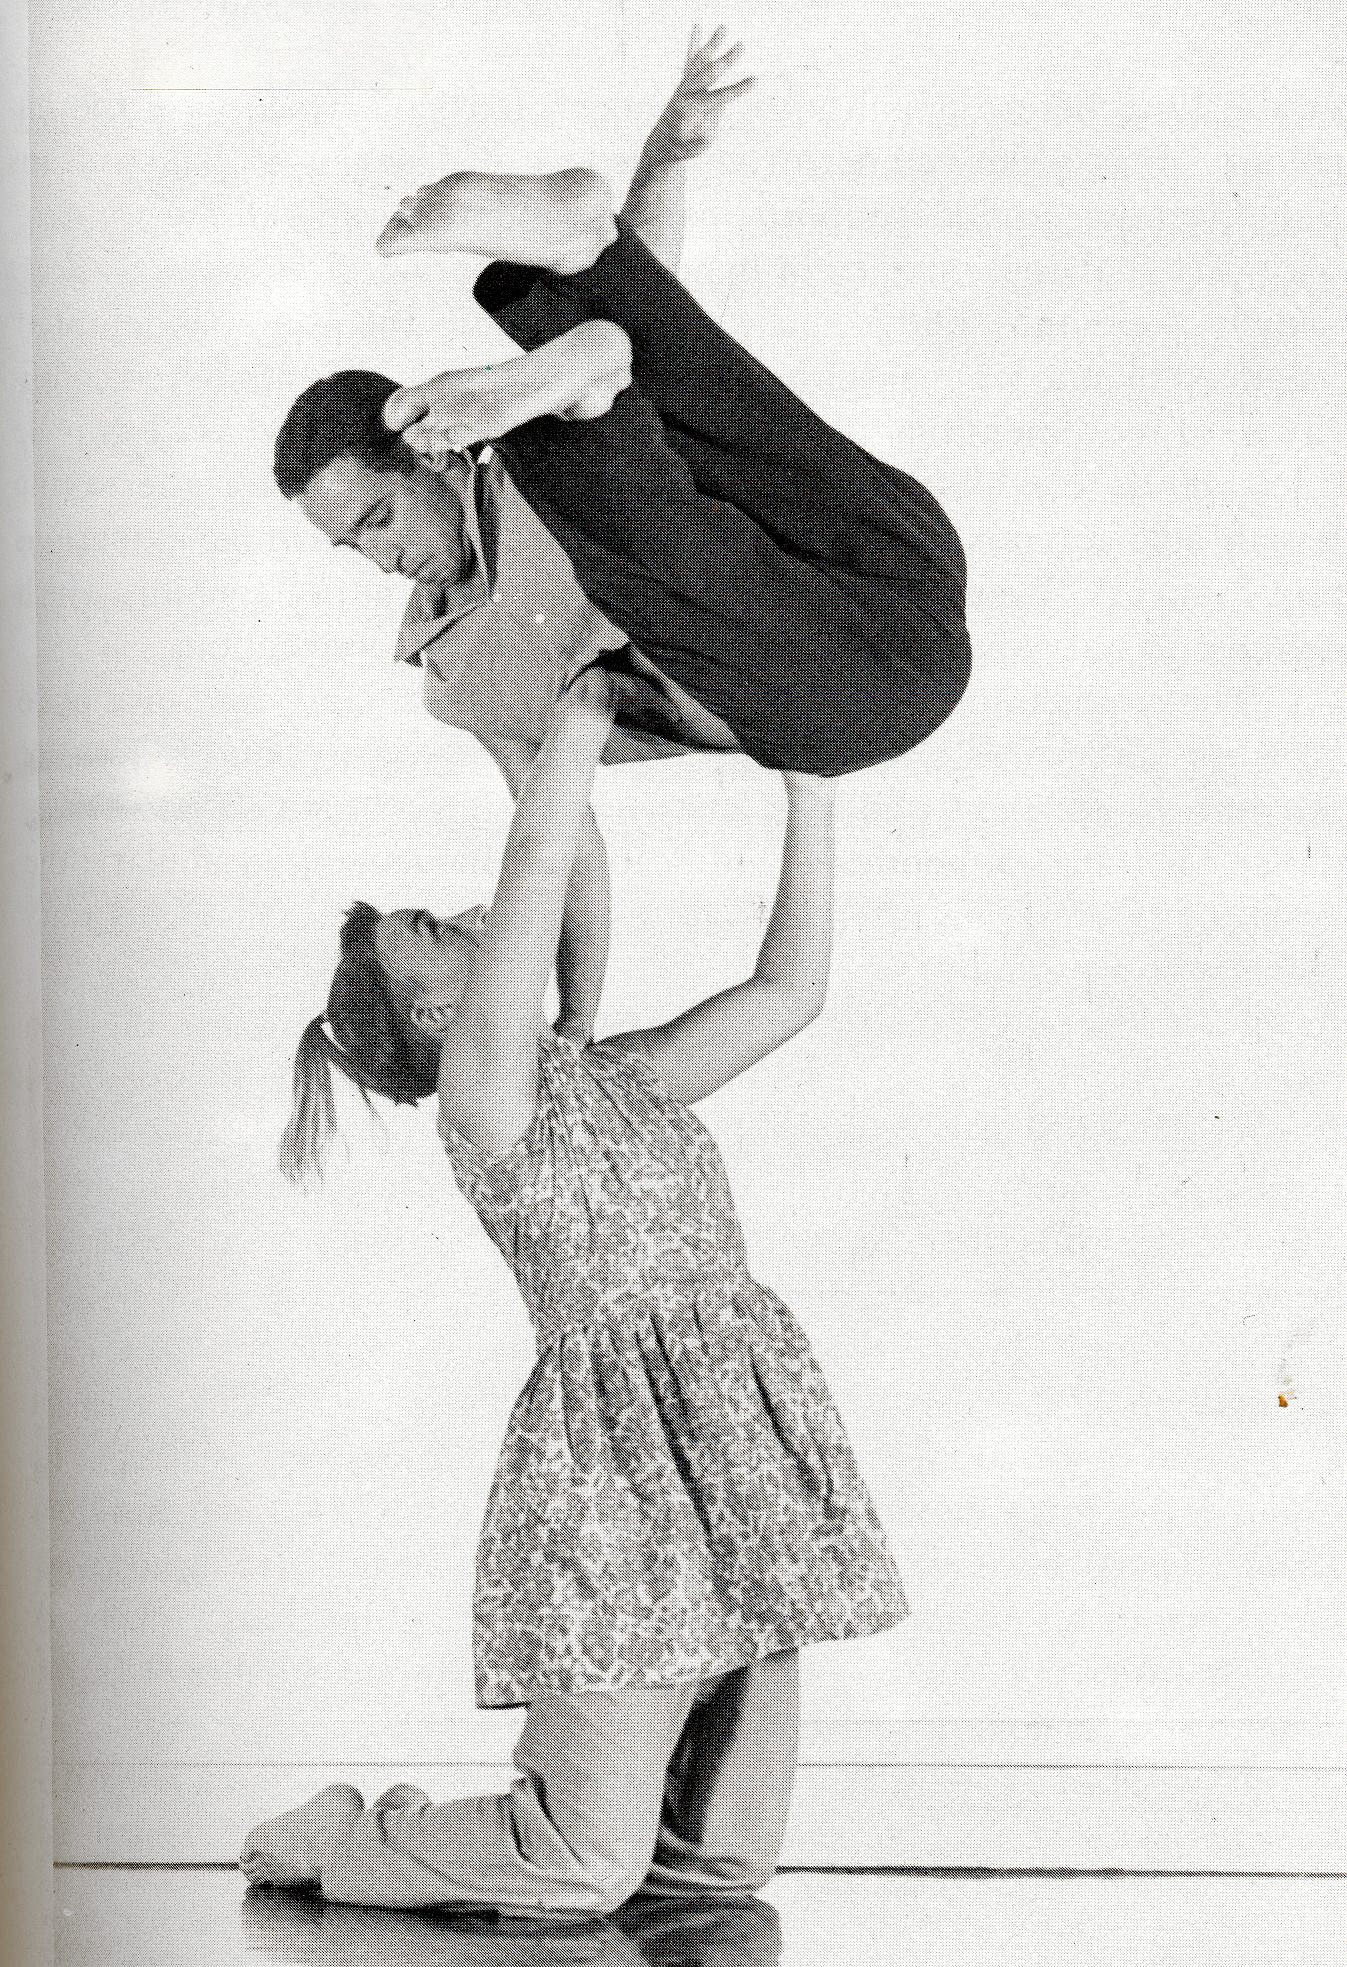 Karen Nelson, Alito Alessi, Hoop Dance, 1988.